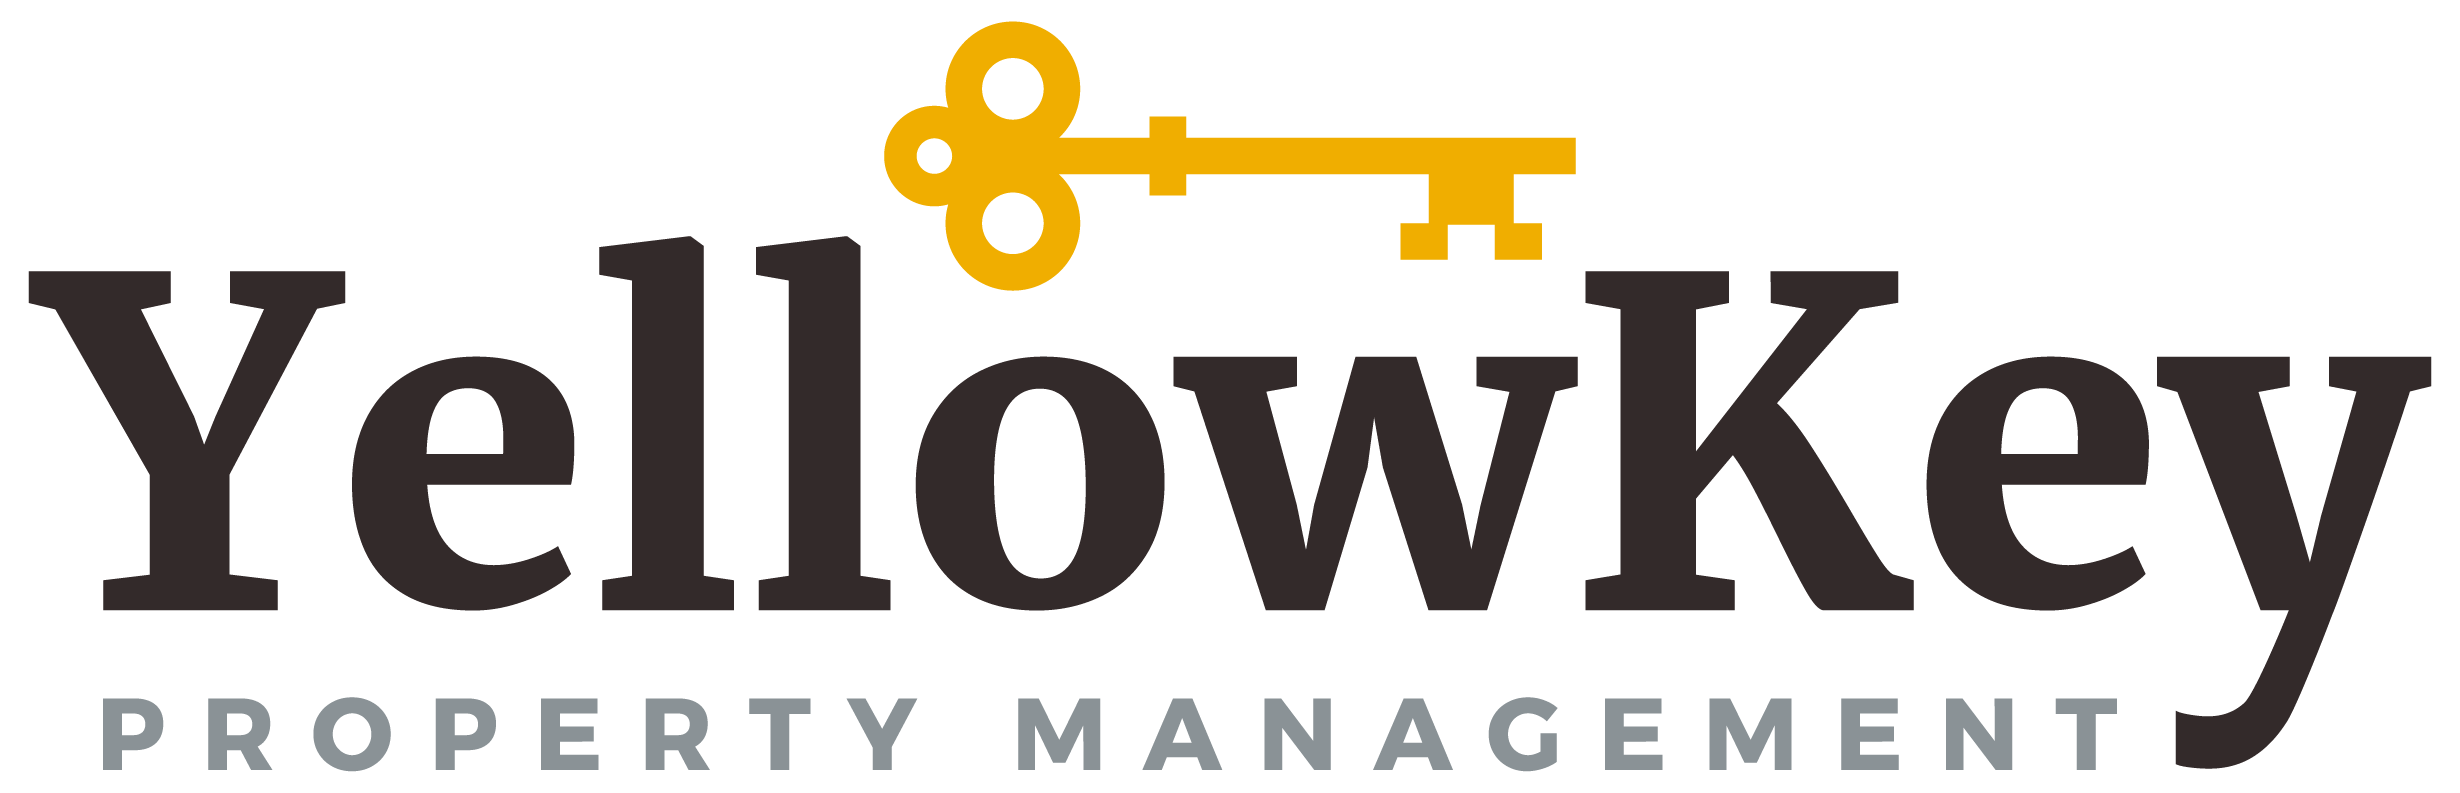 Yellow Key Property Management logo